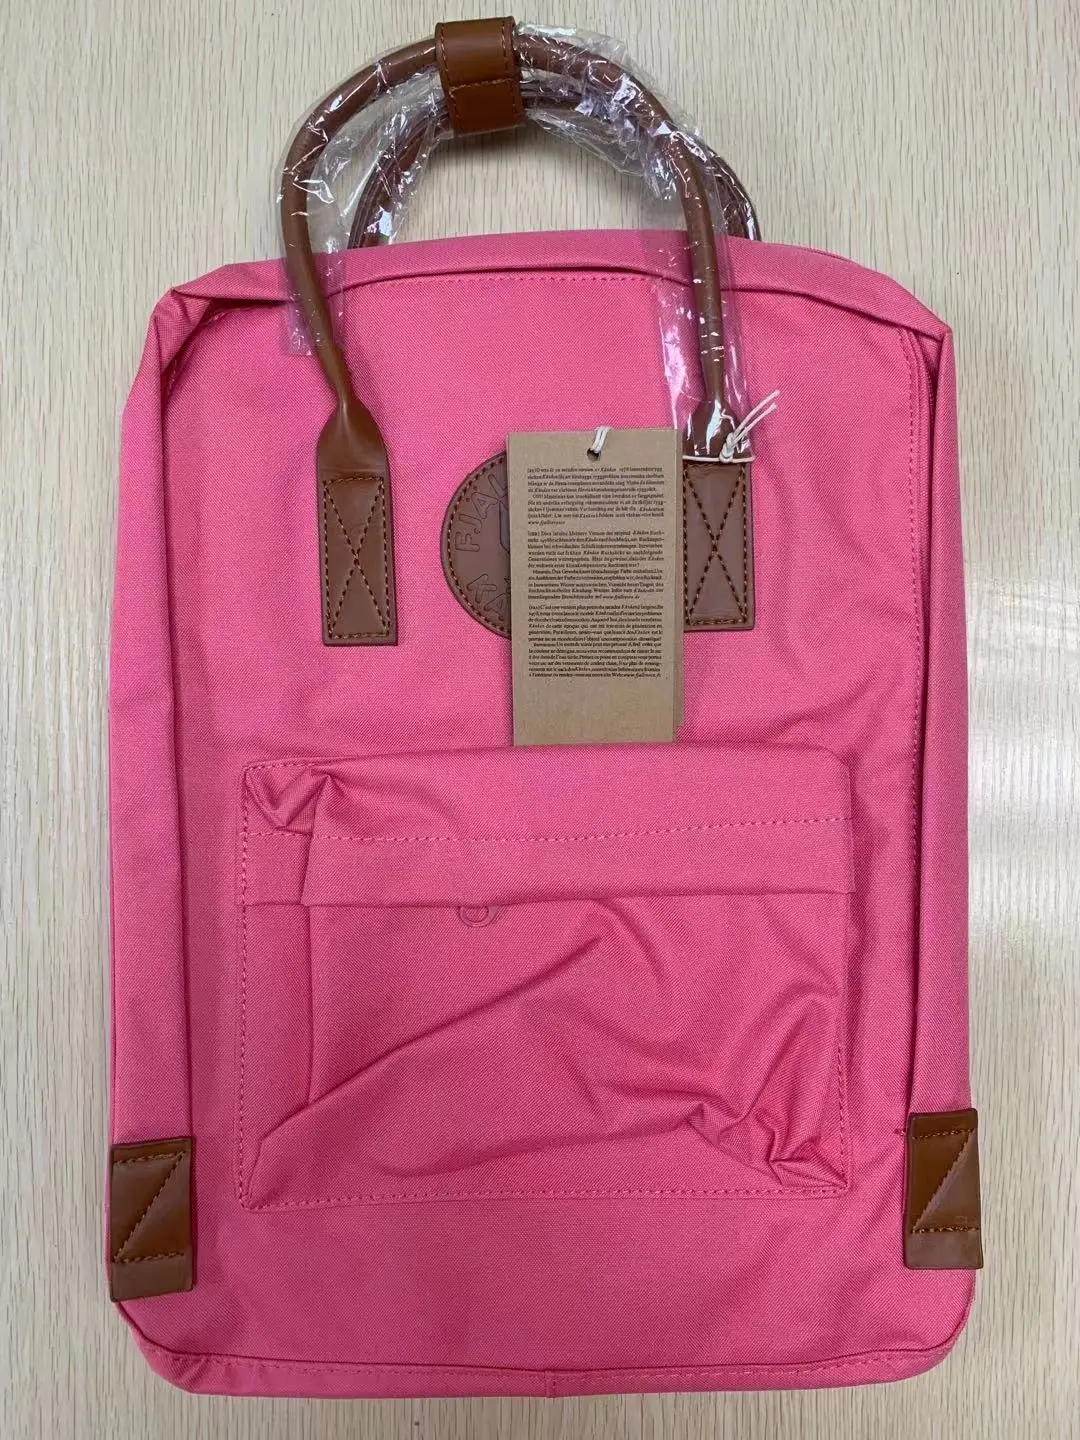 

Рюкзаки для женщин и детей, Классическая дизайнерская сумка KenFox, рюкзак Fjallraven, школьный рюкзак, дизайнерские сумки